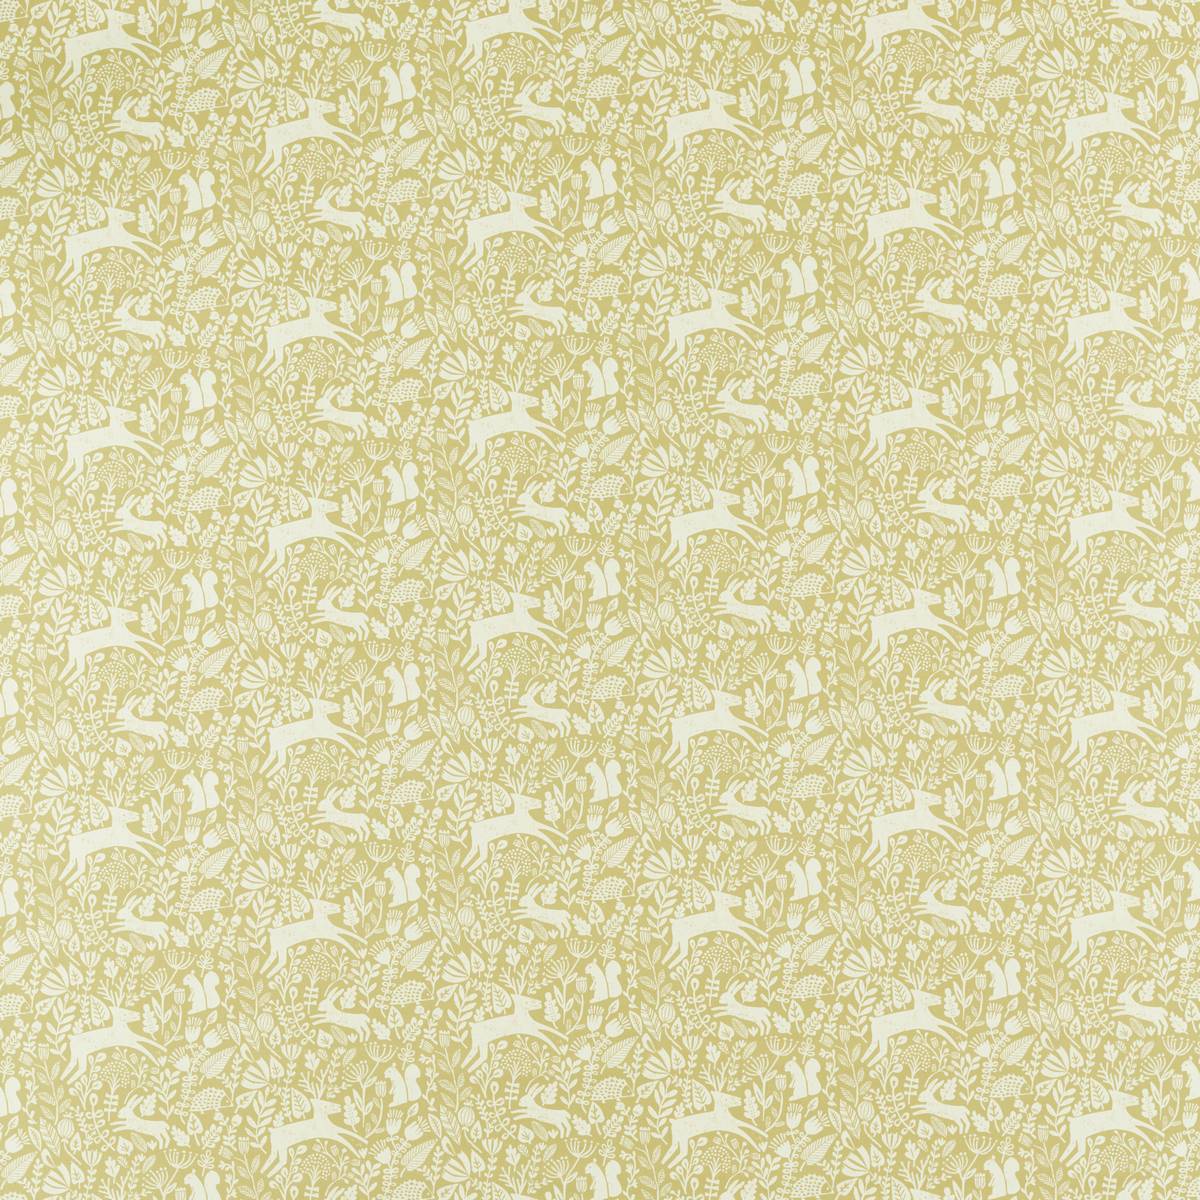 Kelda Grasshopper Fabric by Scion